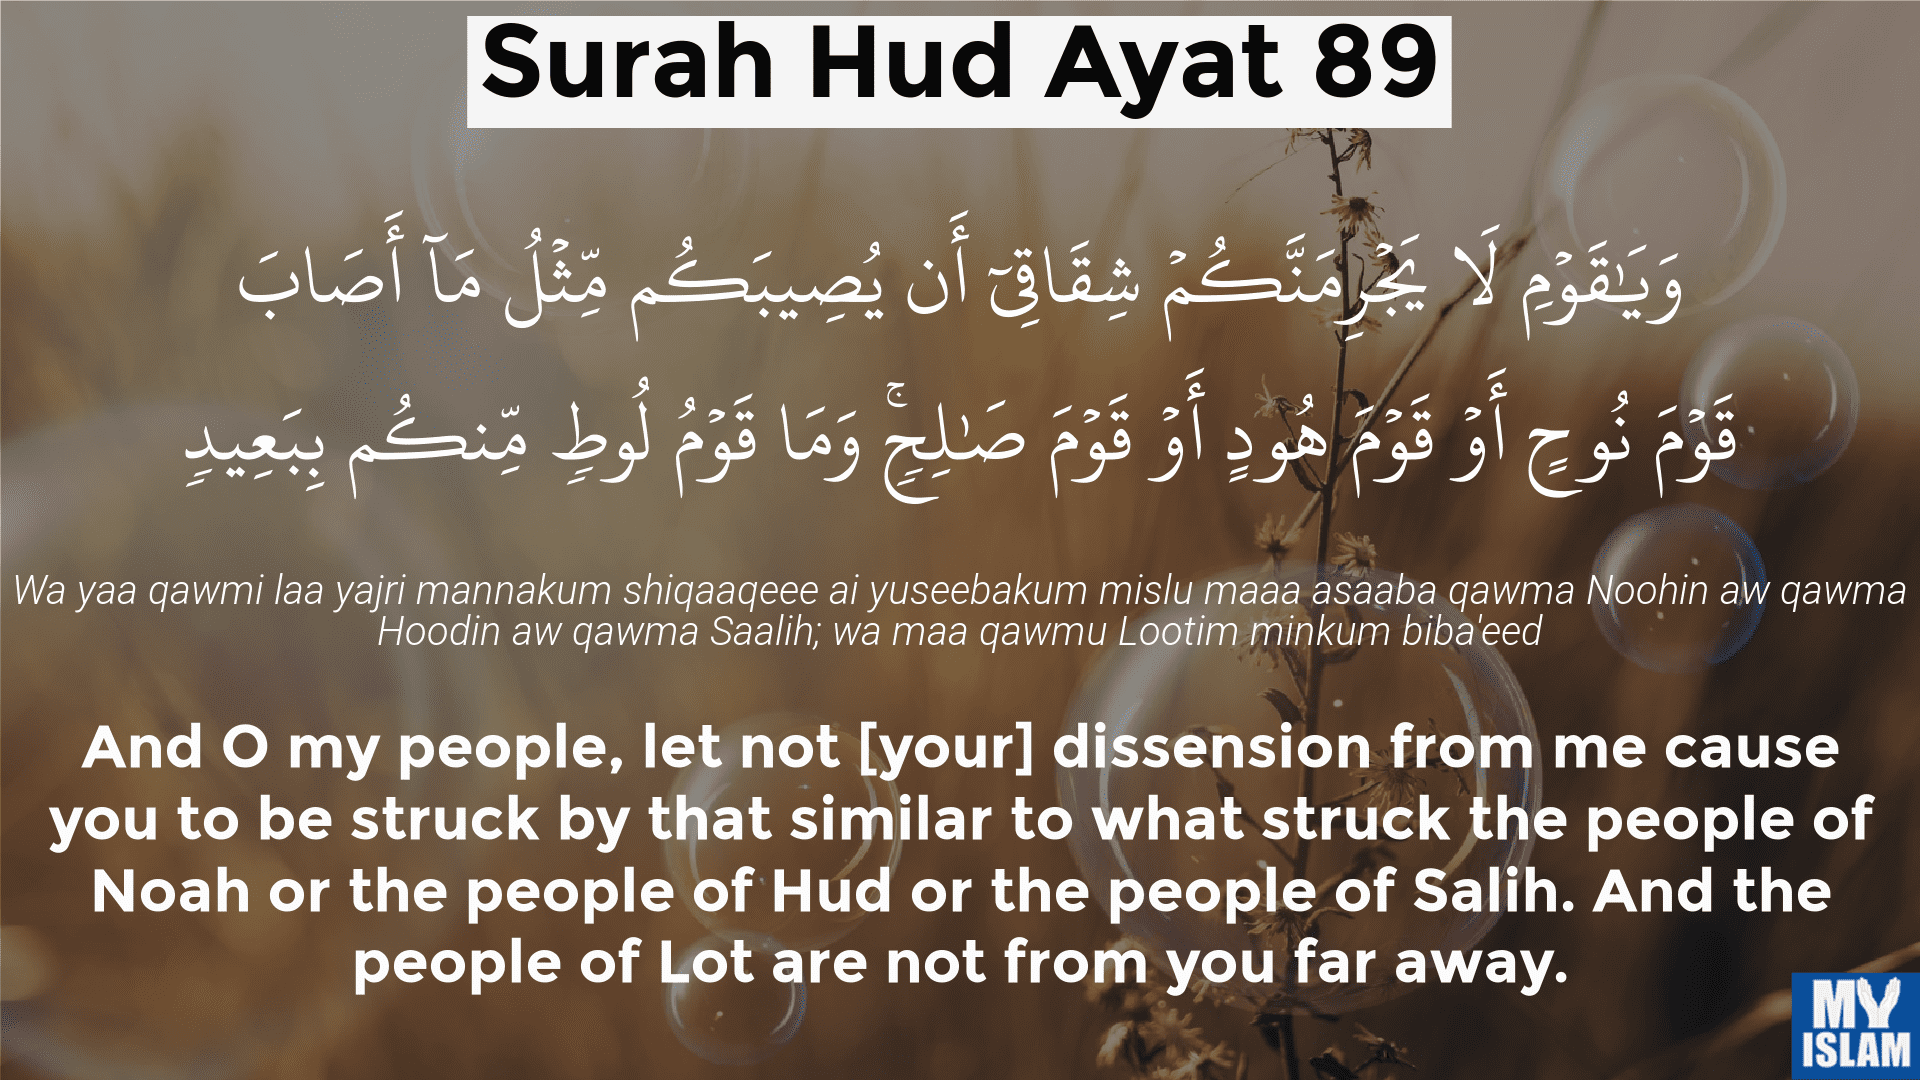 Surah-Hud-Ayat-89.png